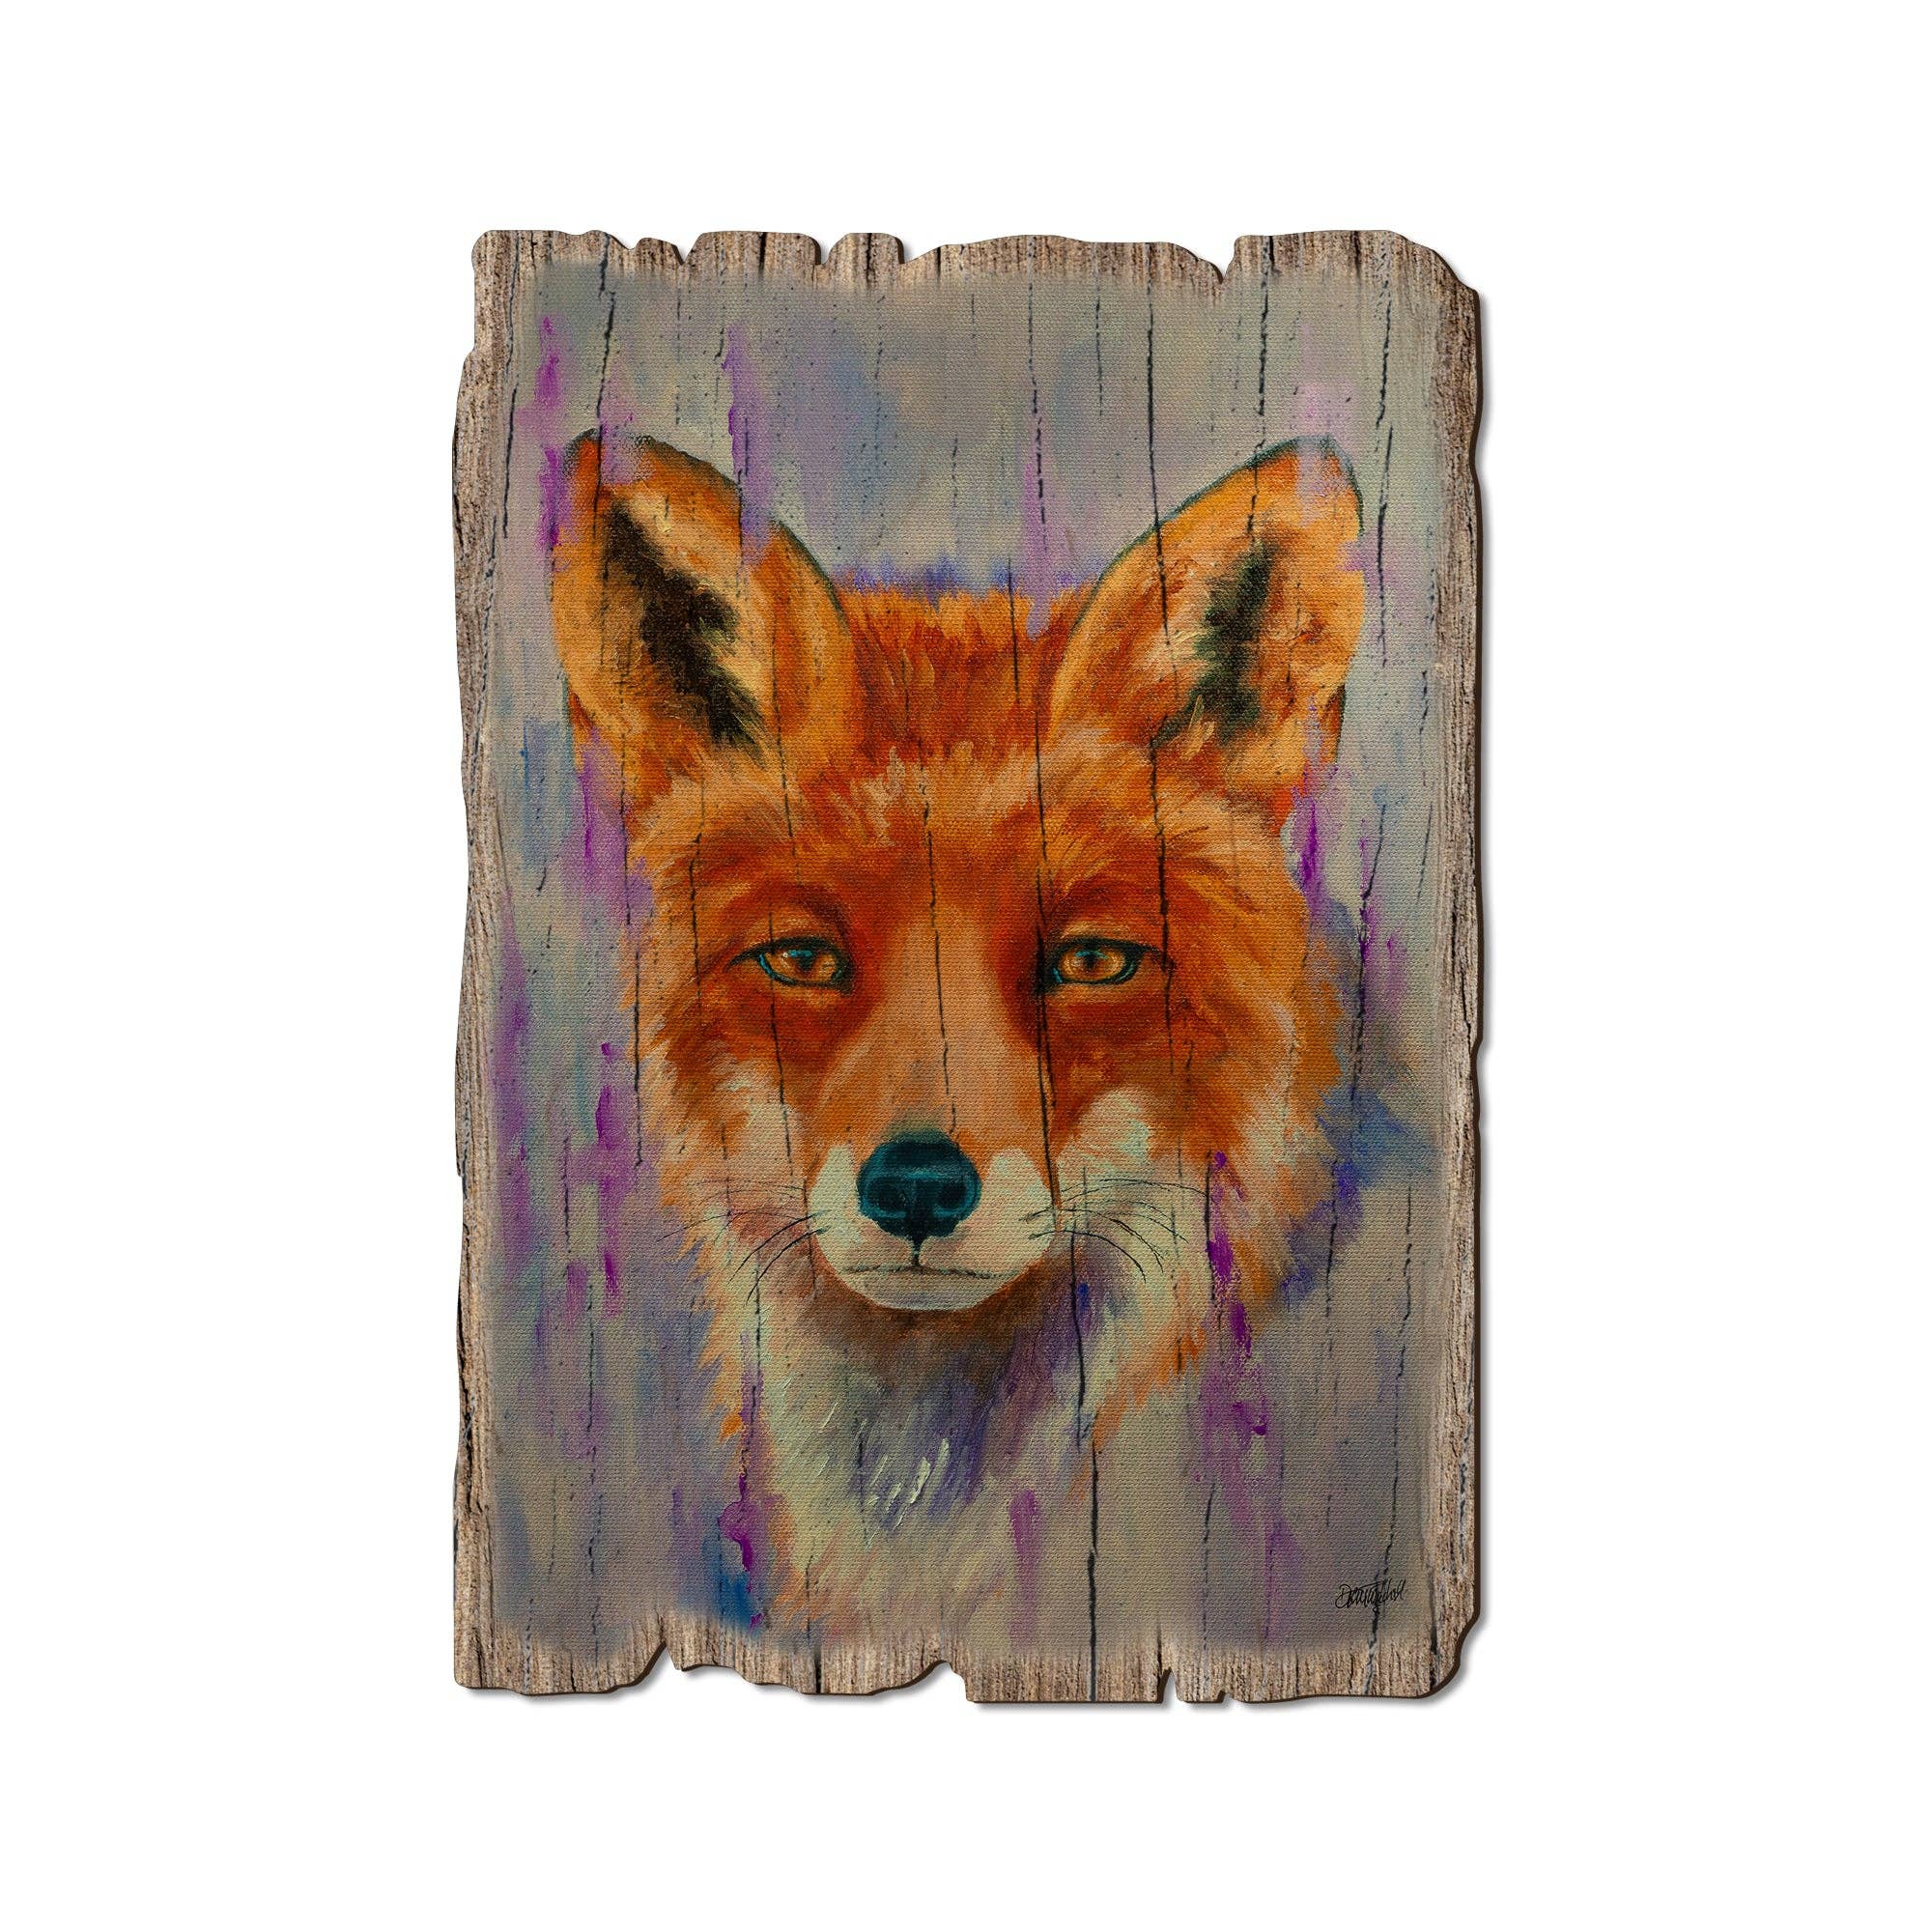 DaydreamHQ - Morning Gaze Fox - Wood Rustic Edge Postcards